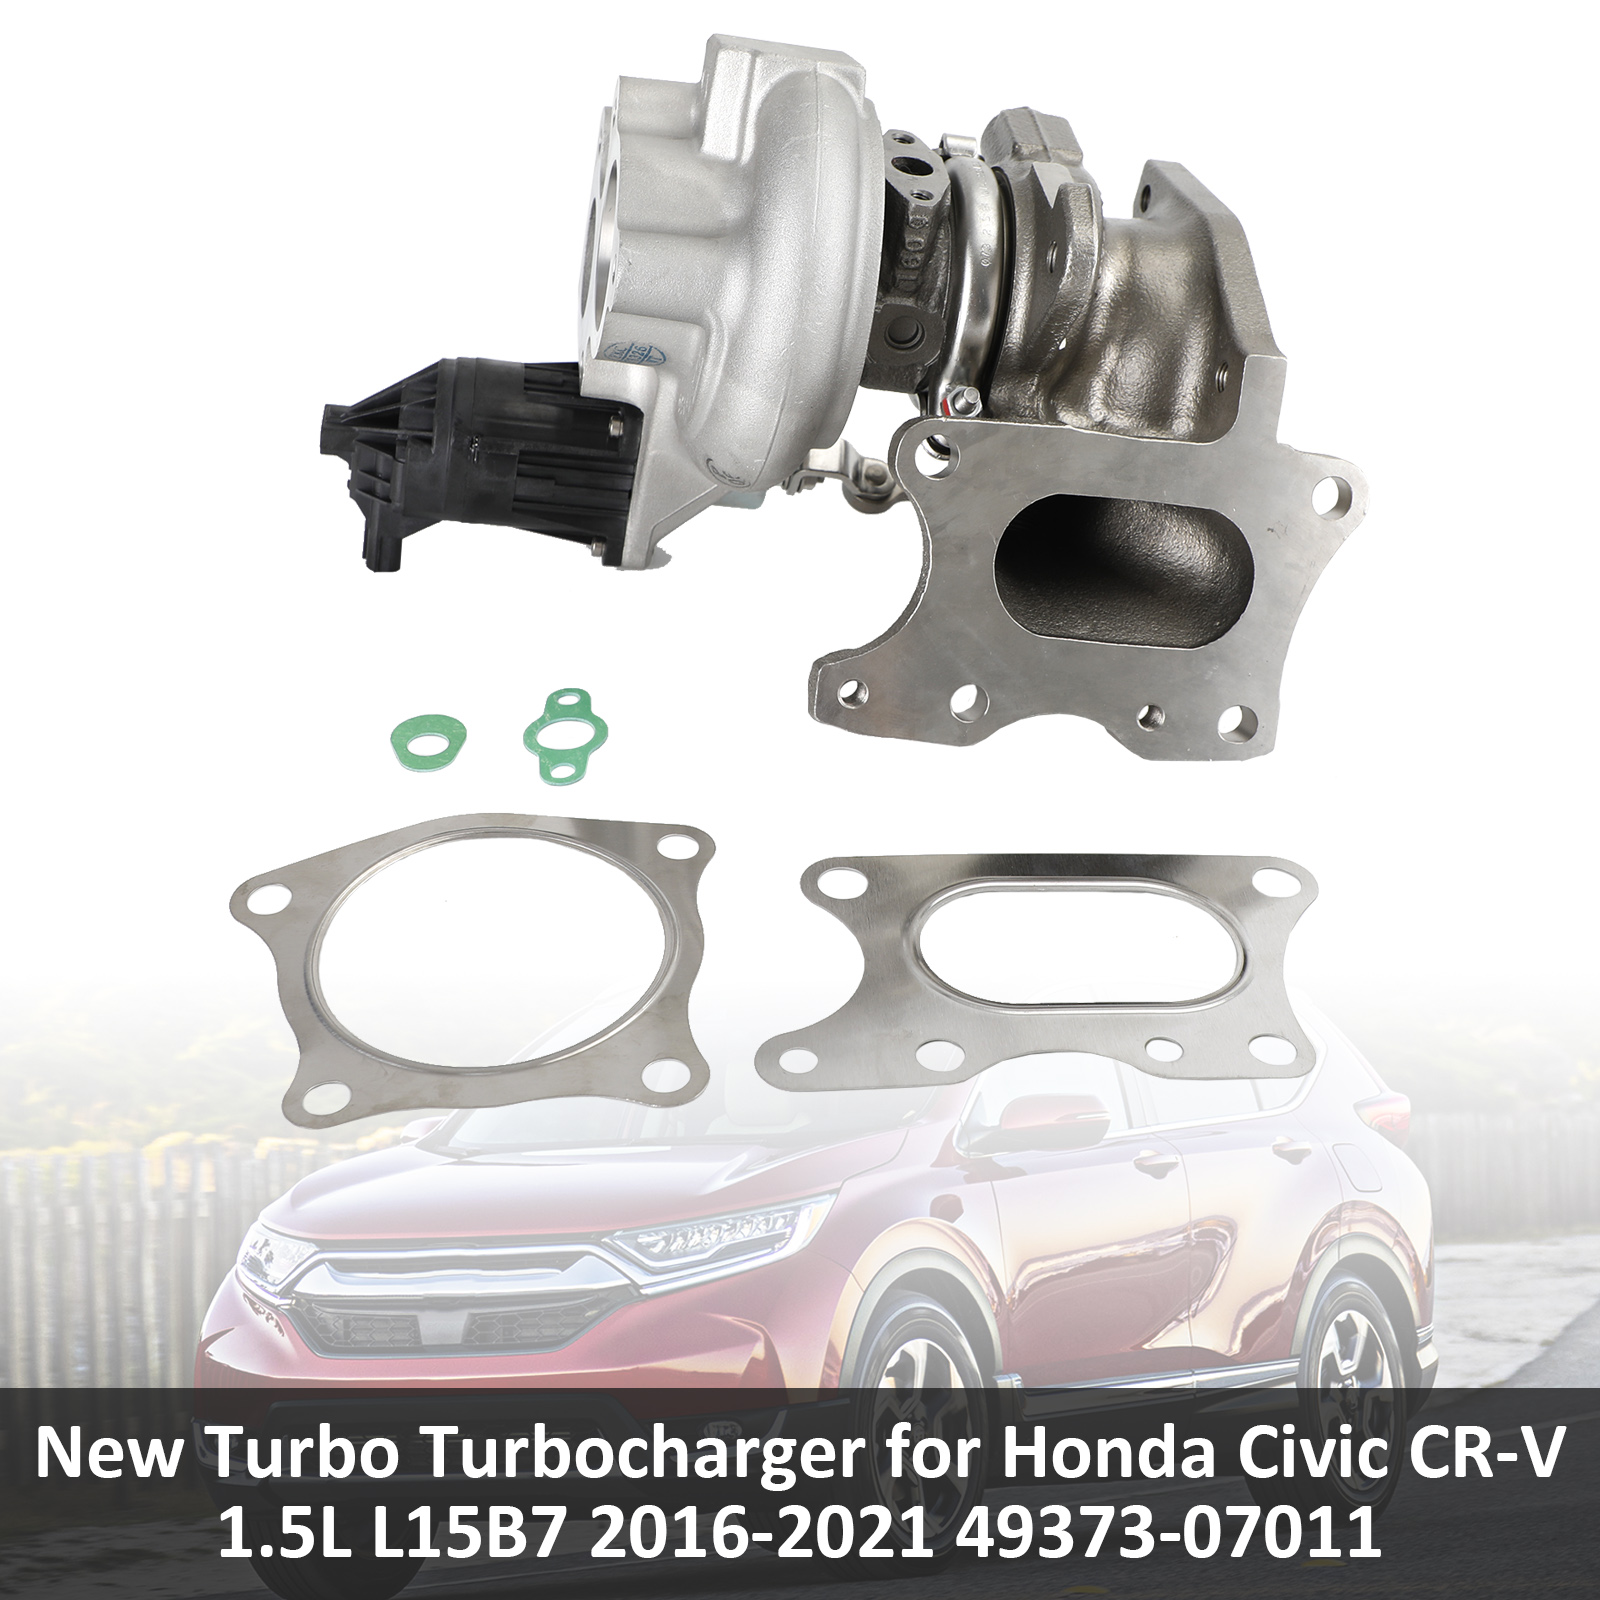 Honda Civic CR-V 1.5L L15B7 2016-2021 49373-07011 渦輪增壓器總成-極限超快感